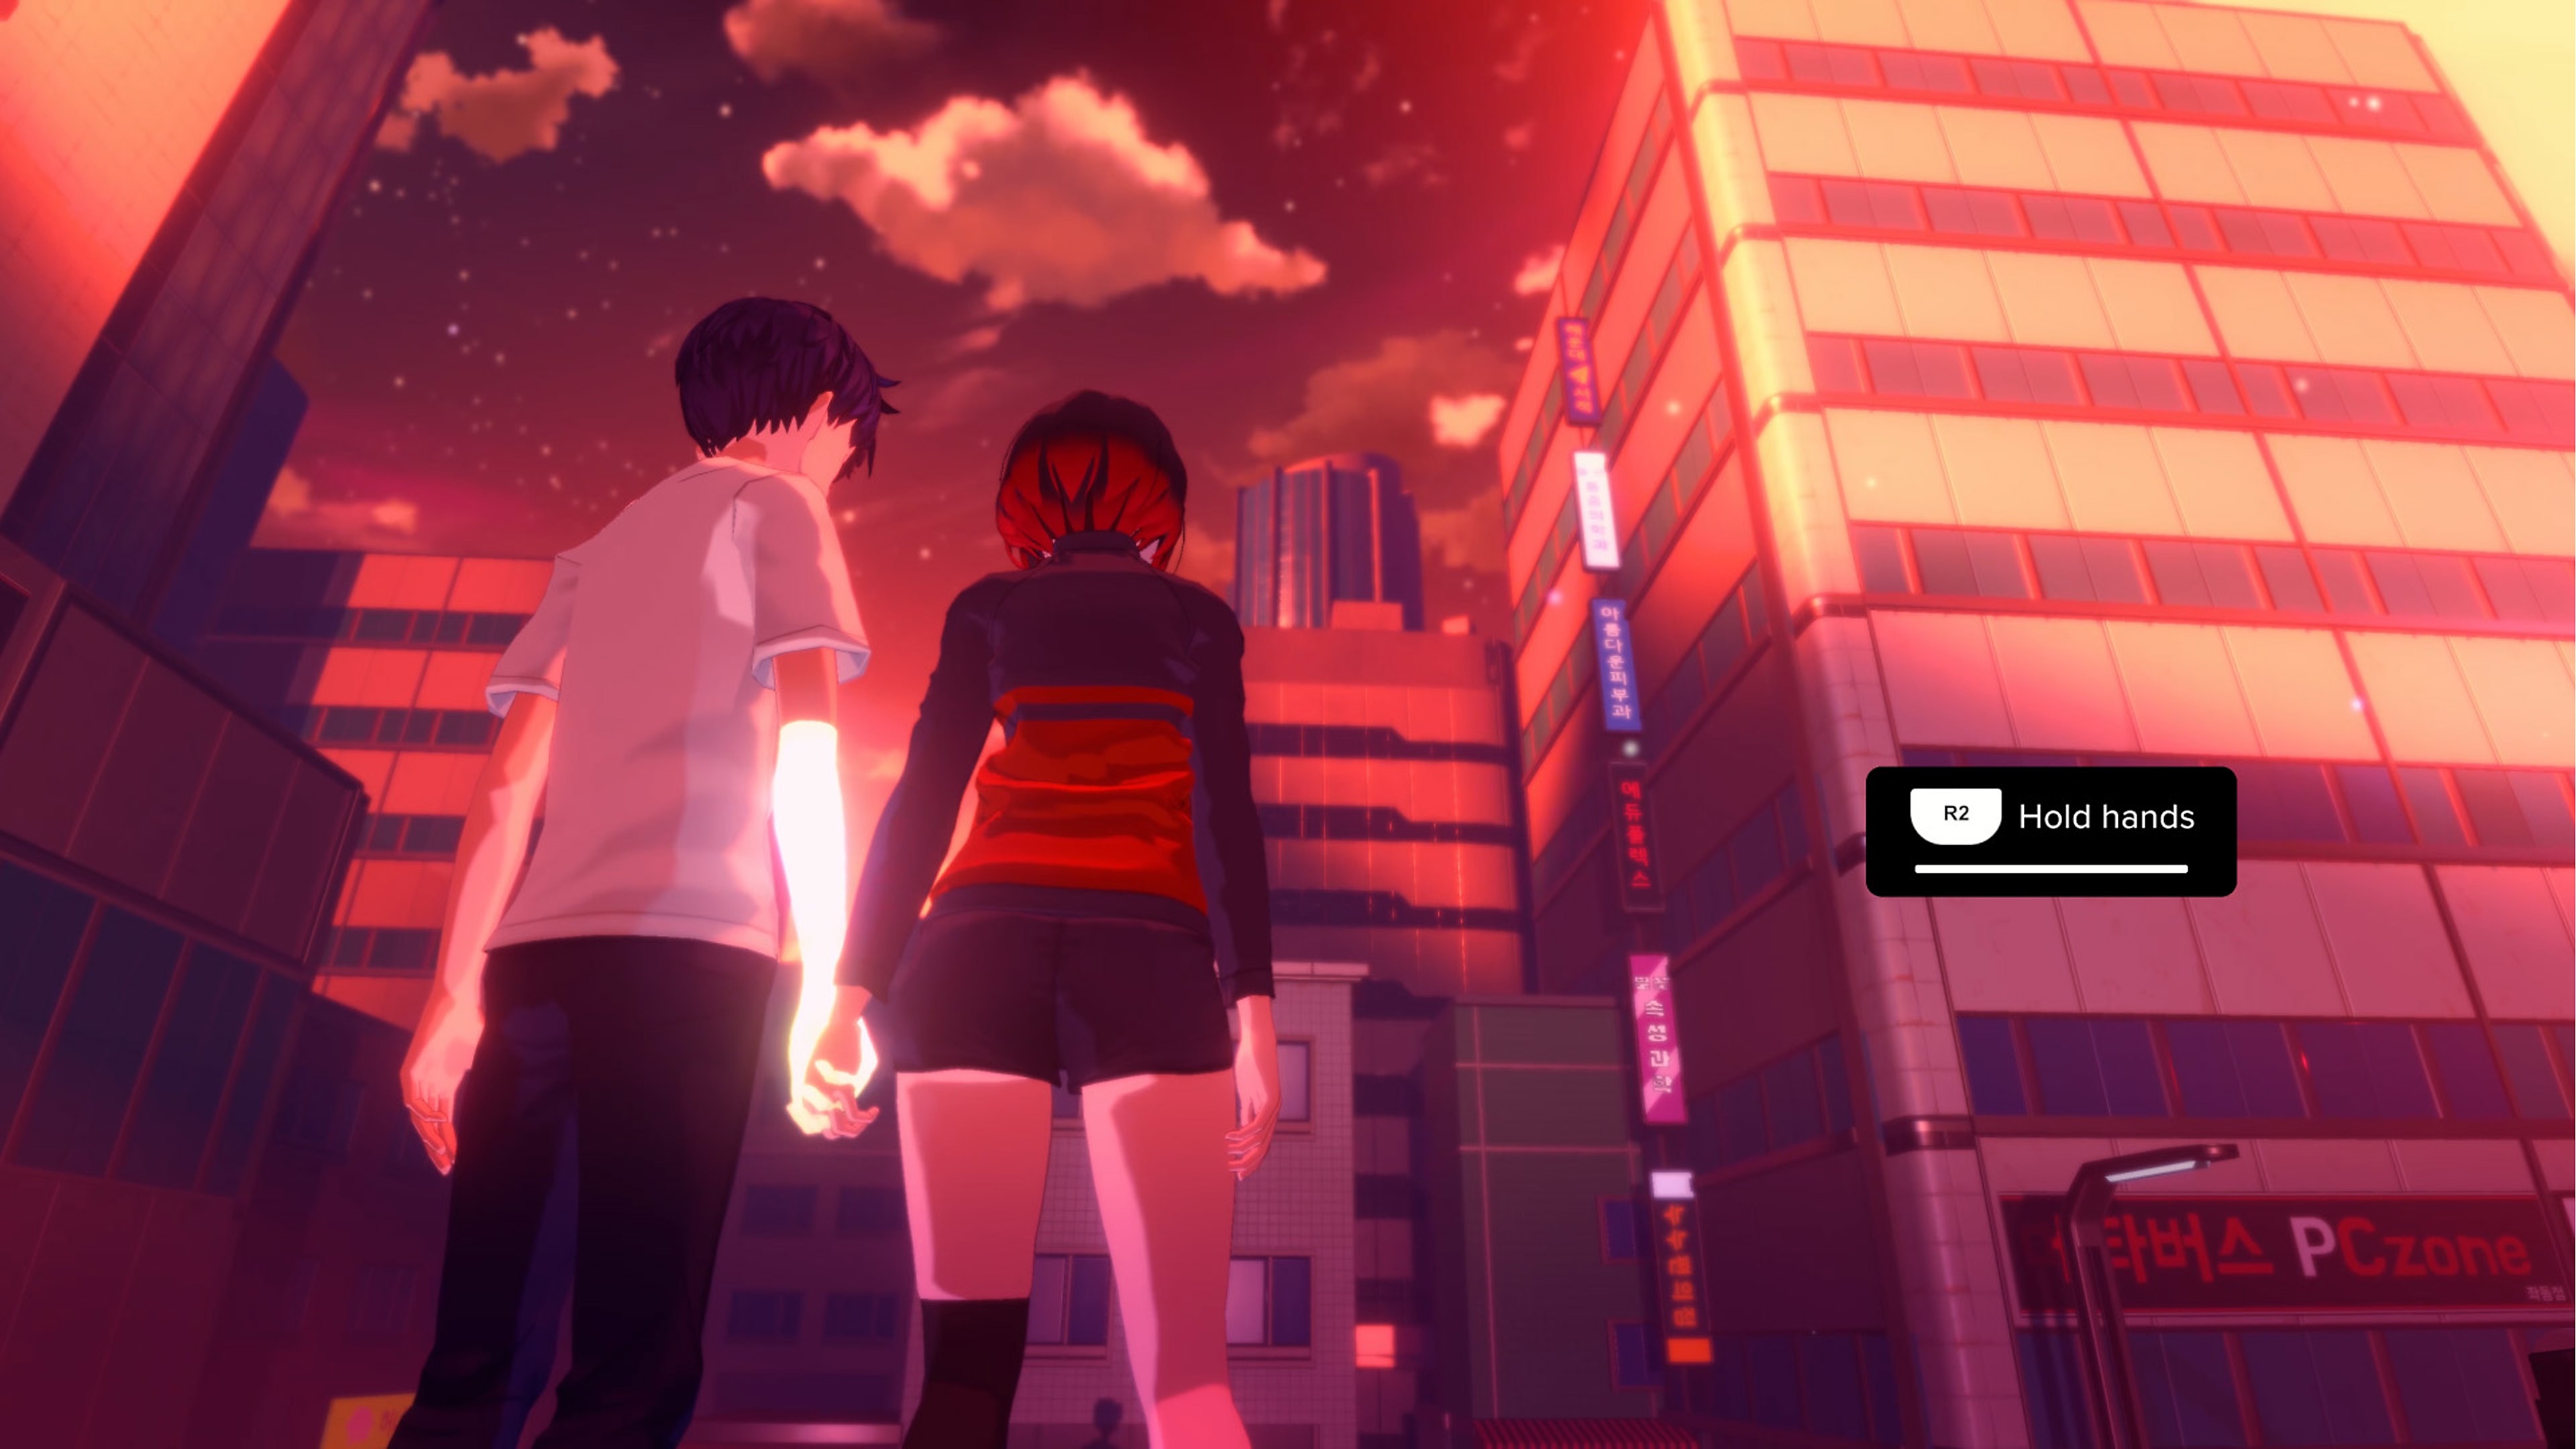 لقطة شاشة من لعبة Eternights بها شخصيتين في سن المرحلة الثانوية يمسكان أيديهما أمام مبنى شاهق في المدينة.